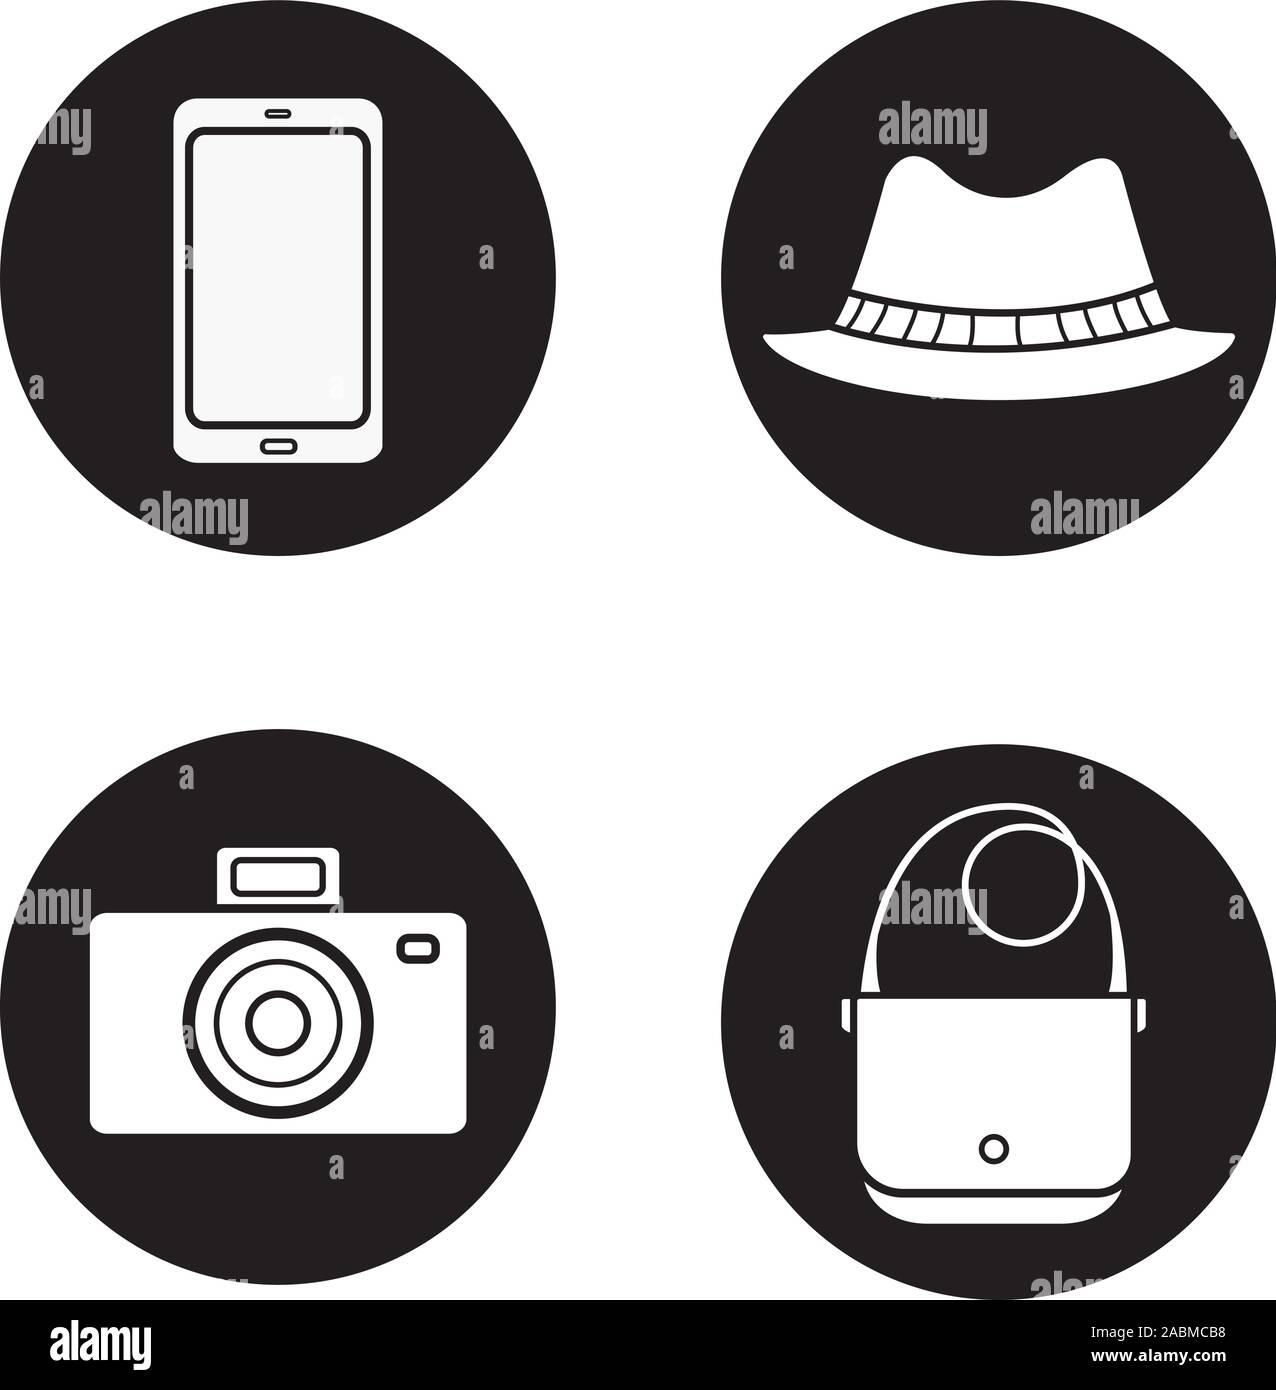 Los hombres de accesorios del conjunto de iconos. Smartphone, cámara fotográfica, homurg sombrero y bolso de cuero. Equipamiento turístico. Vector ilustraciones en blanco en círculos negros Ilustración del Vector